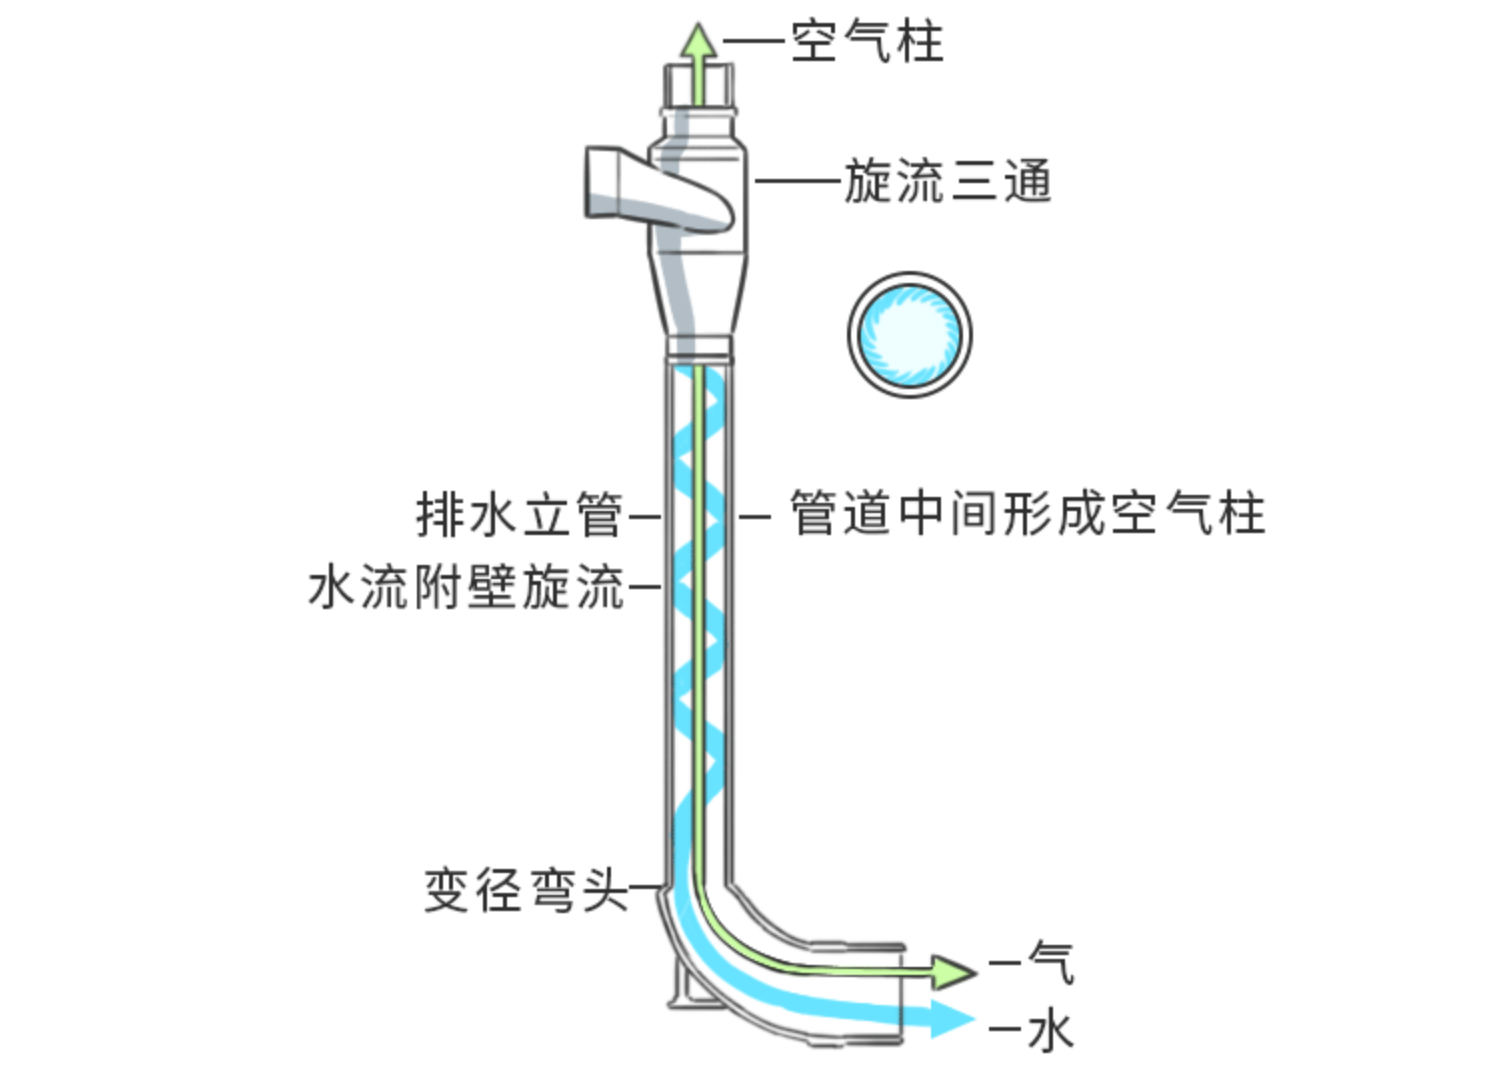 建筑排水用高密度聚乙烯（HDPE）单立管旋流排水系统-上海隆塑管业有限公司